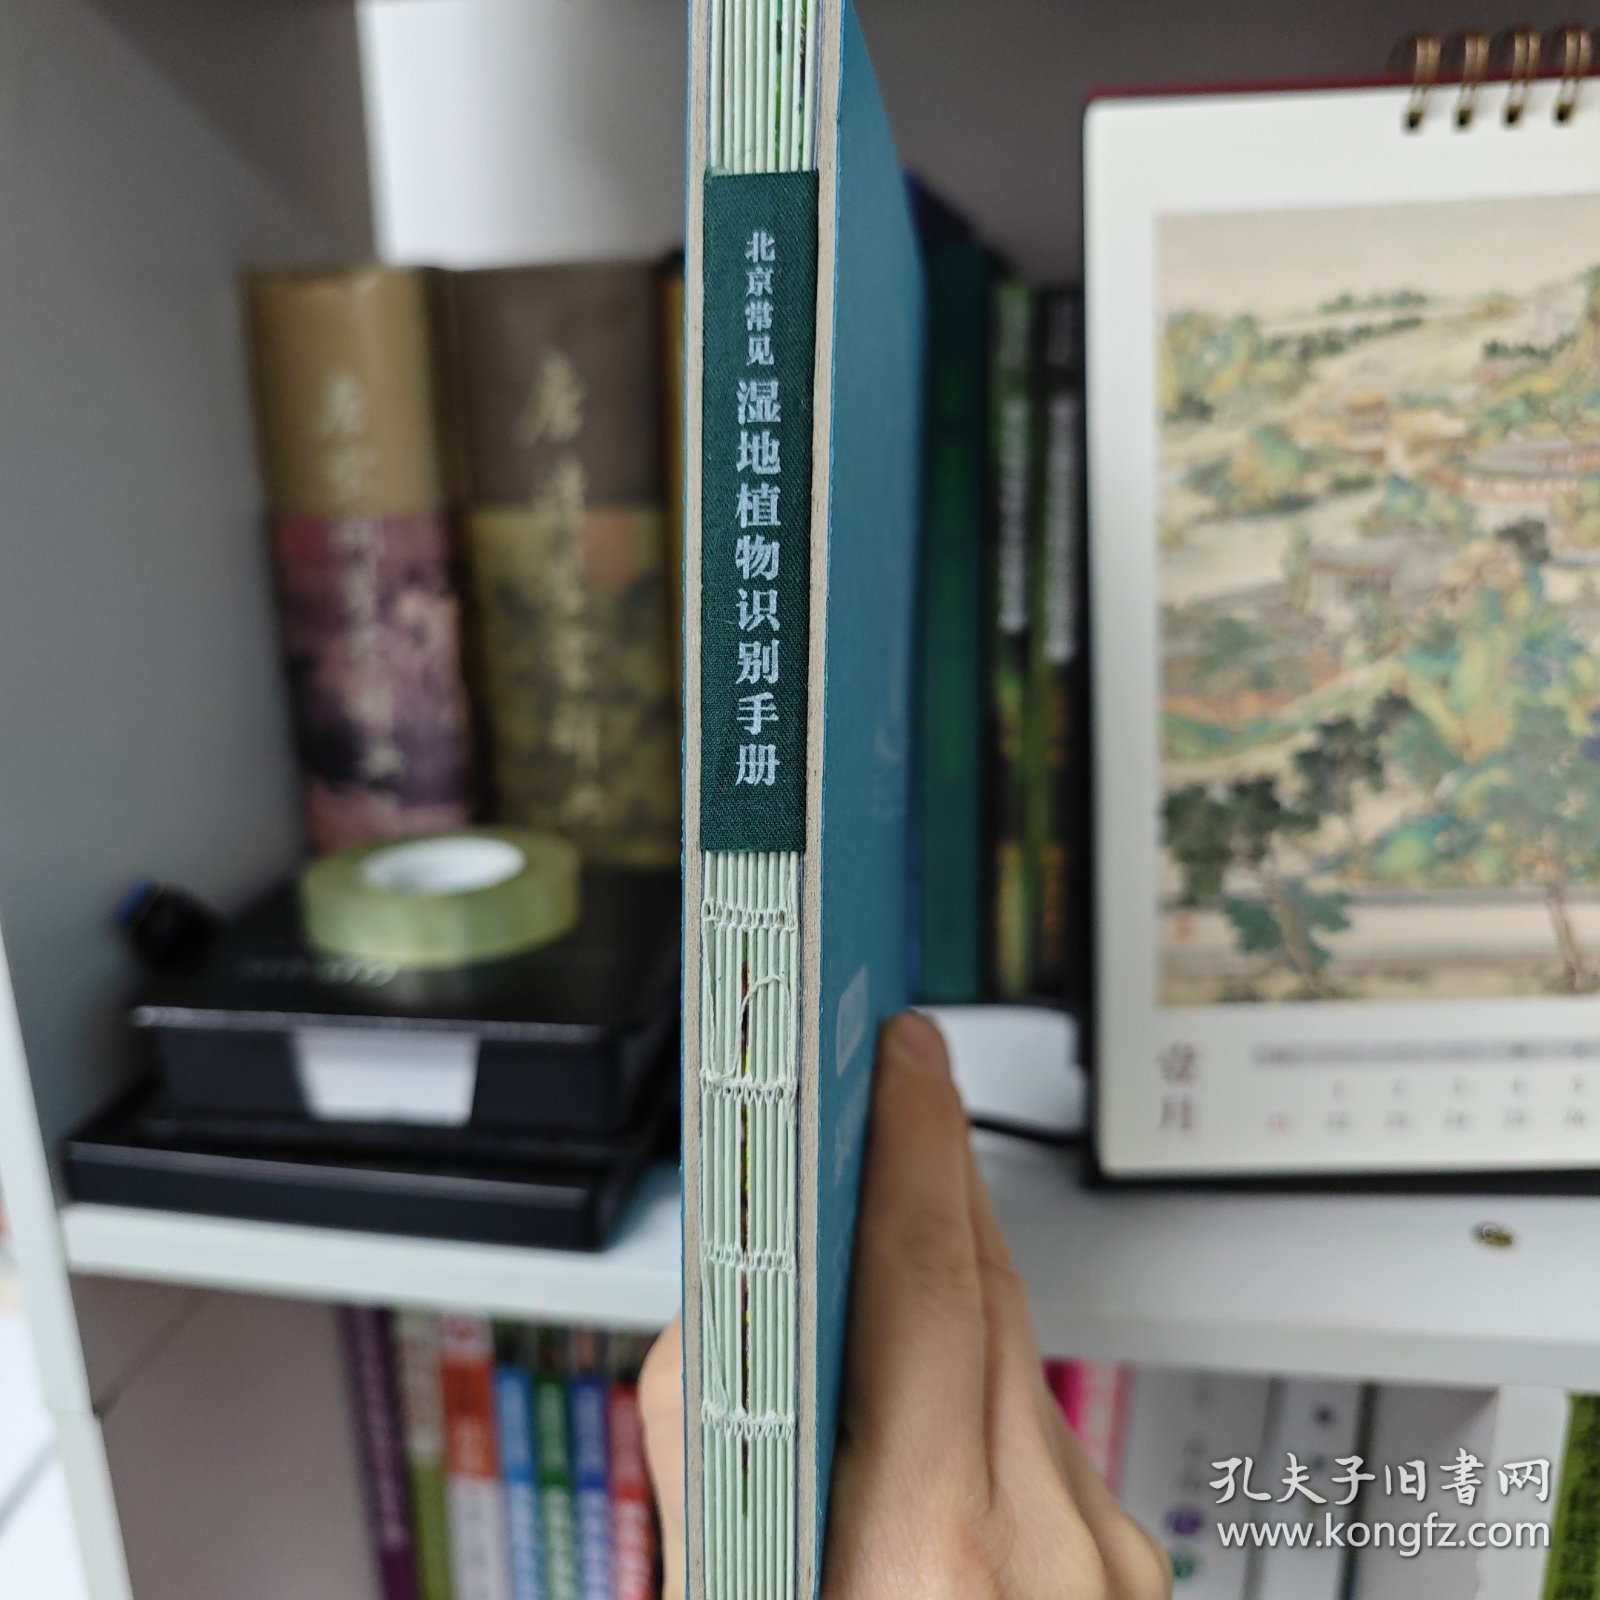 北京常见湿地植物识别手册